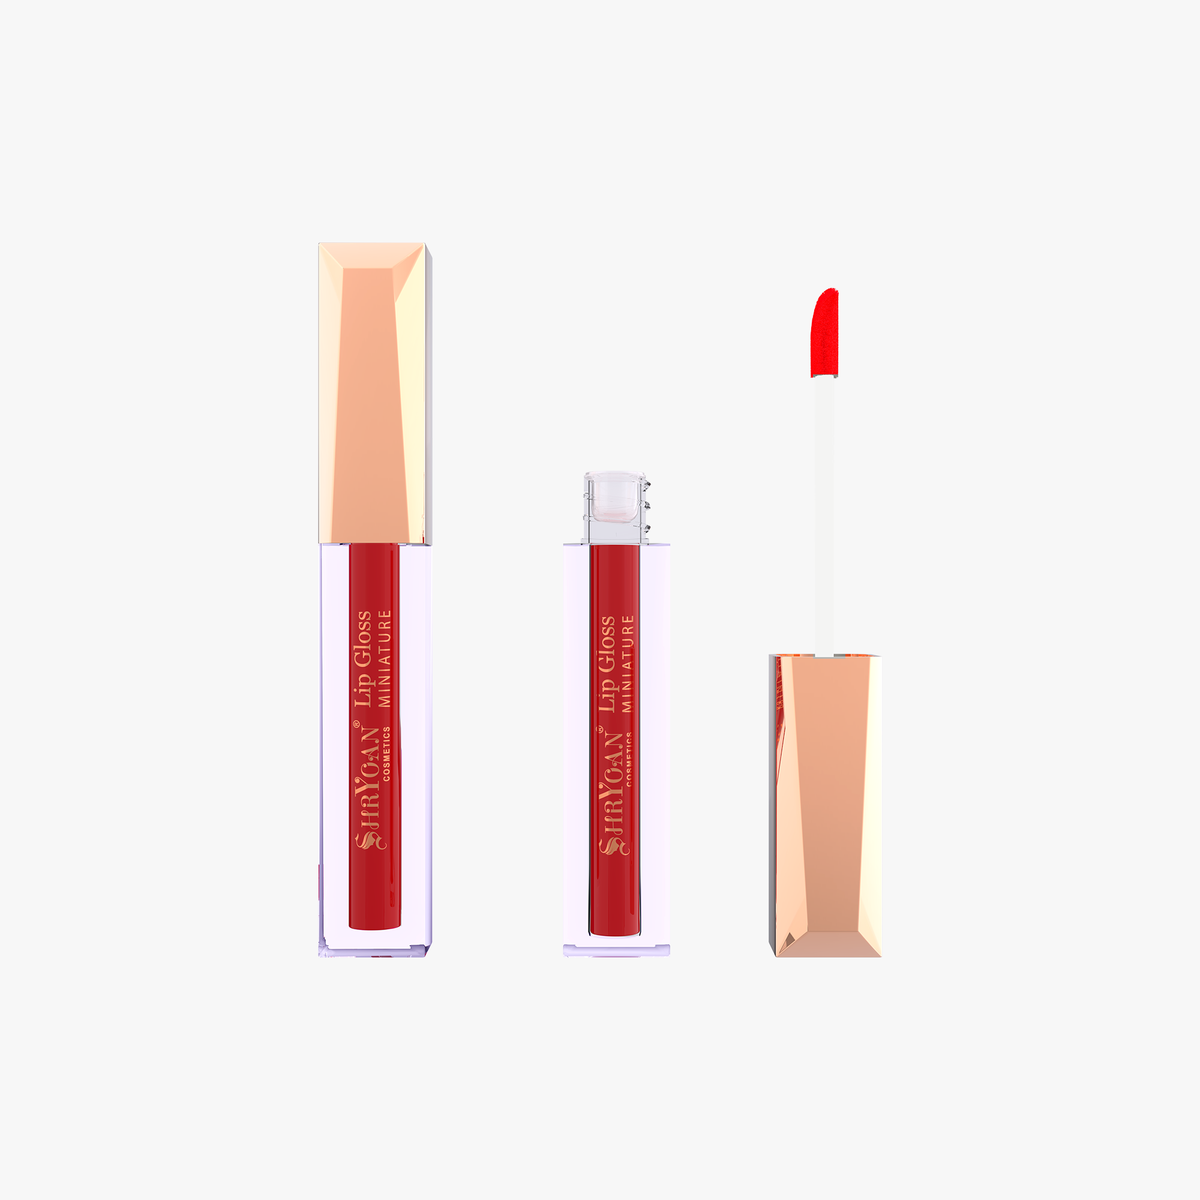 Shryoan Miniature Lip Gloss Lipstick